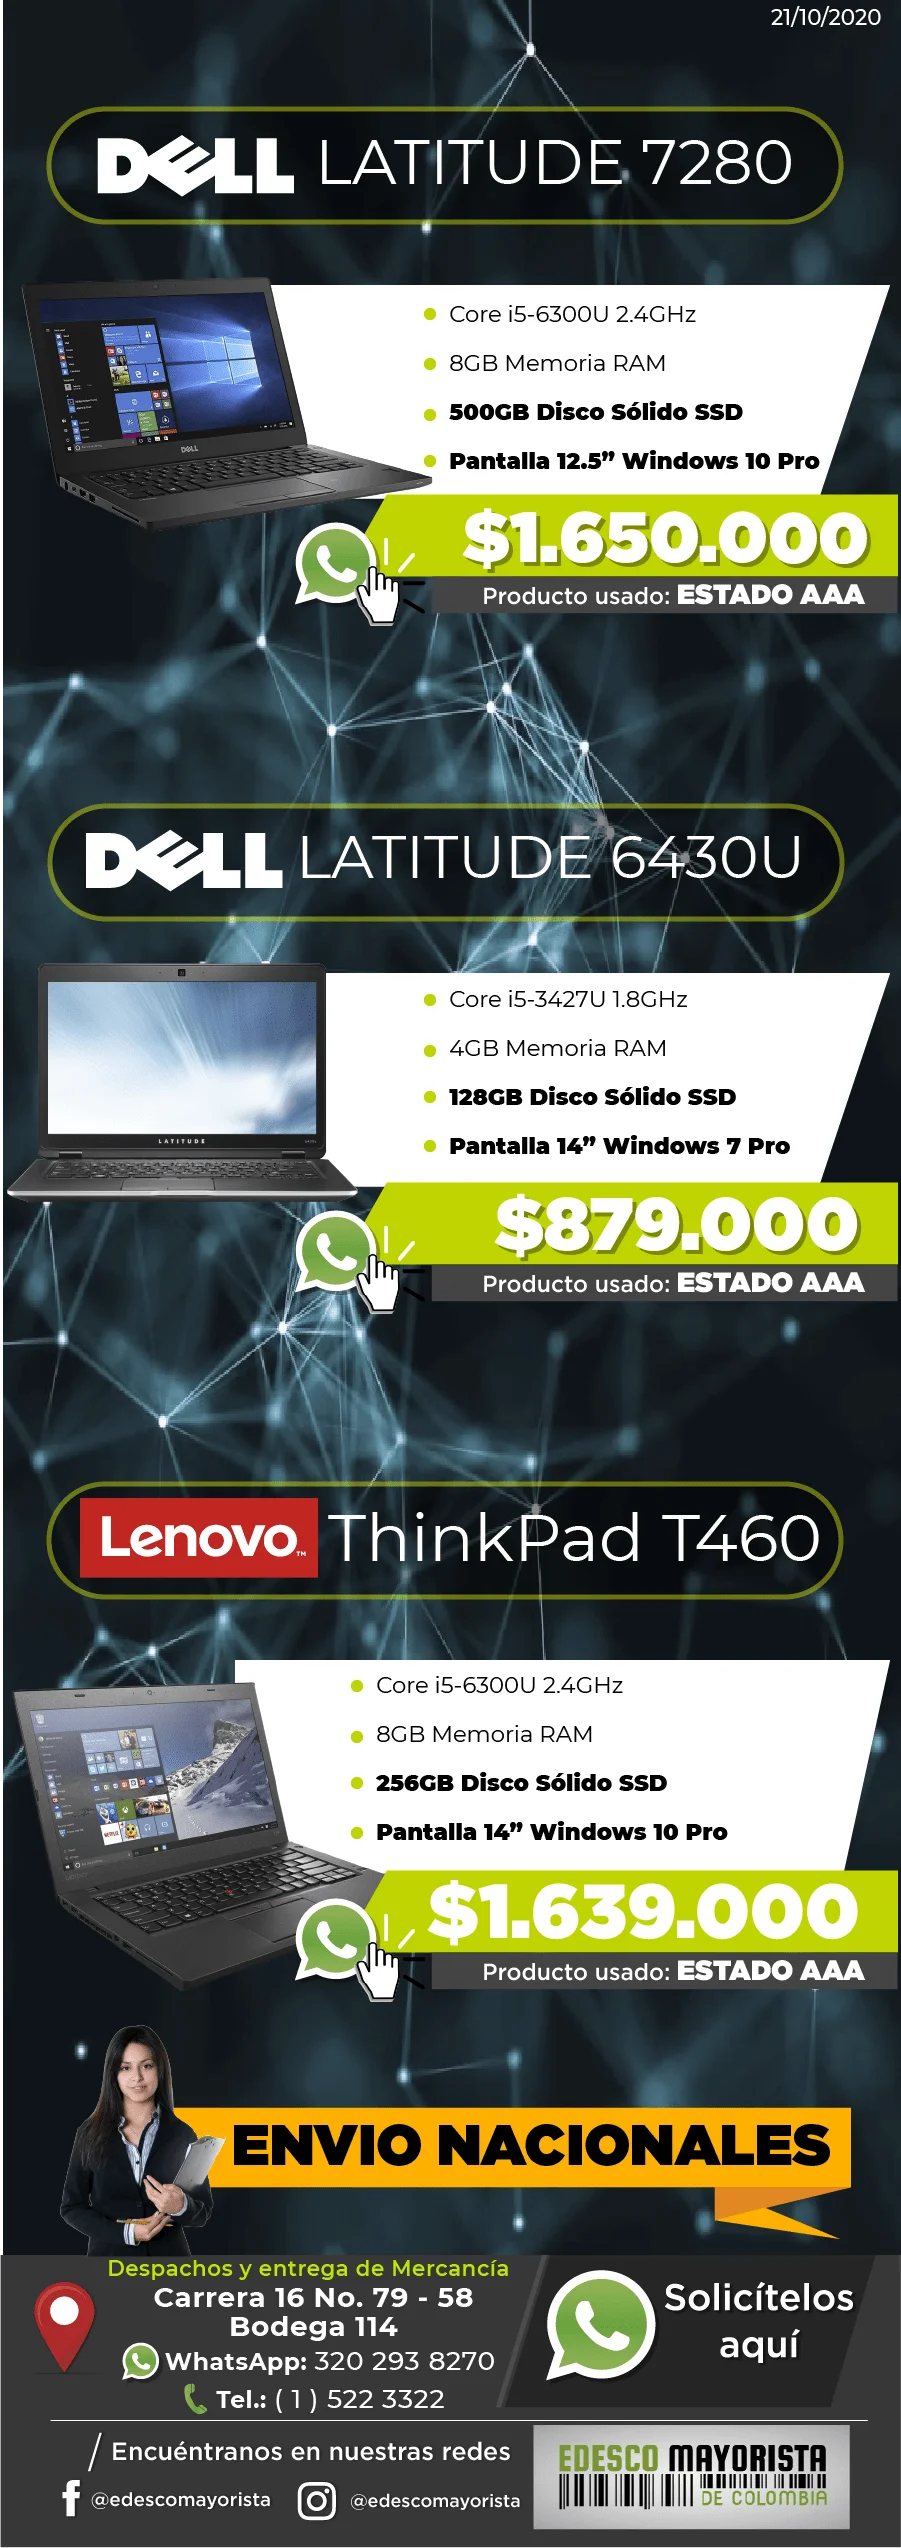 DELL 7280 500GB SSD - Lenovo T460 128GB SSD - DELL 6430U 256GB SSD